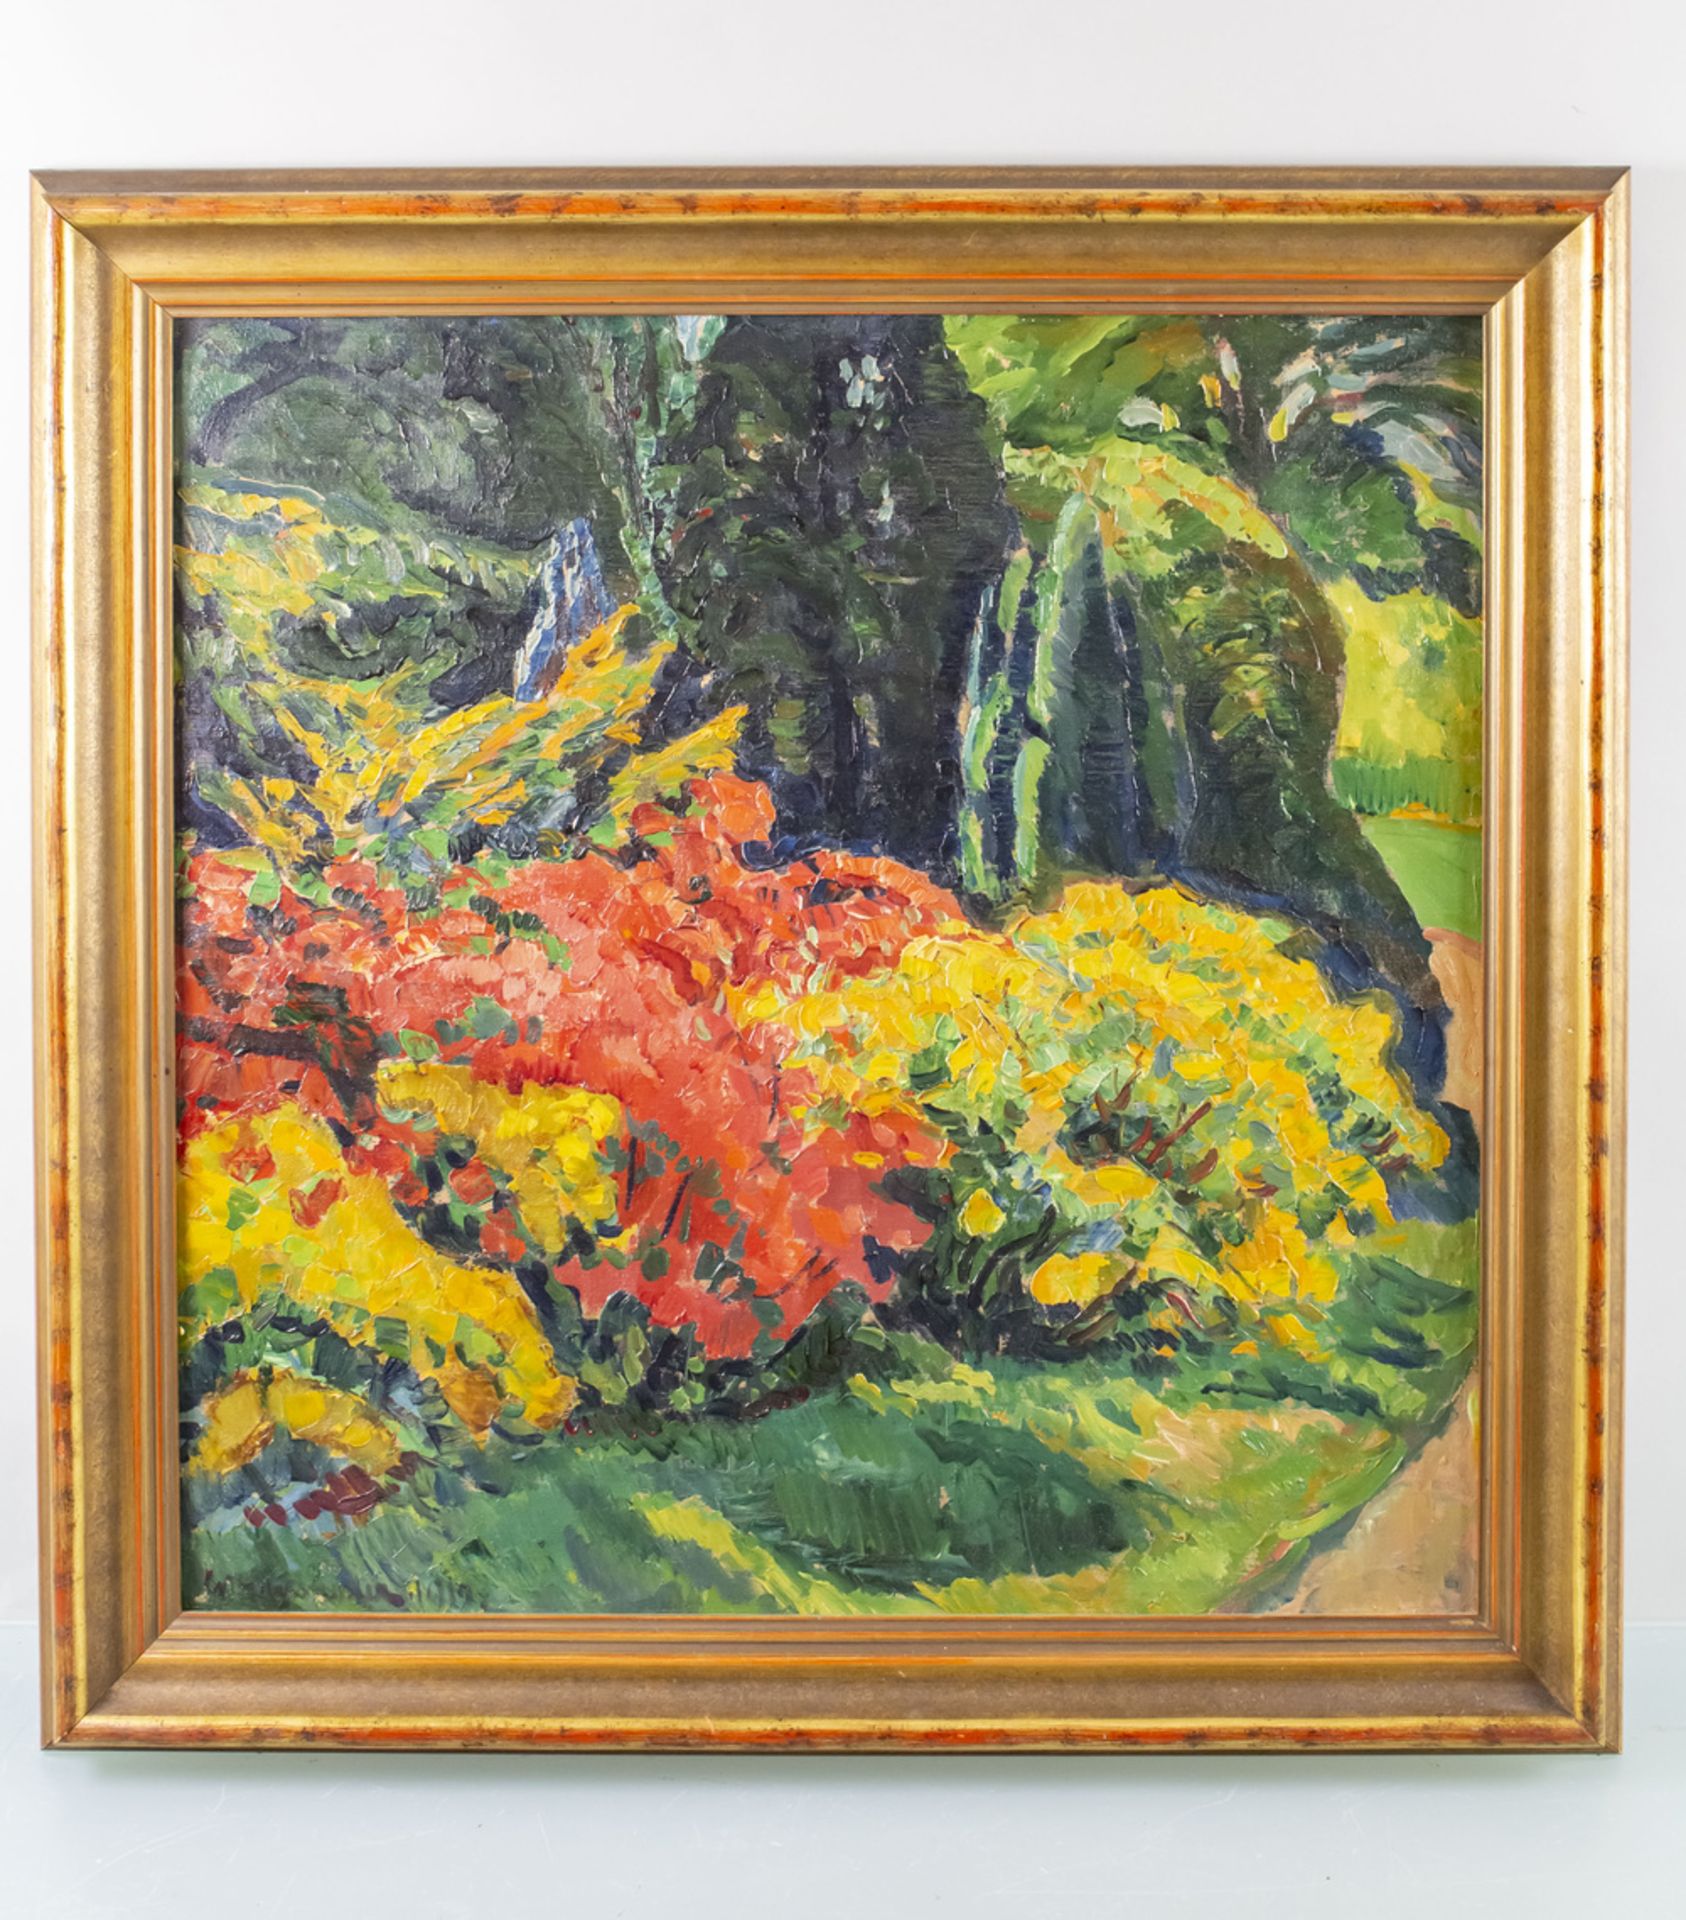 Siegfried BURMEISTER (1906-1998), 'Landschaft mit Blumen' / 'A landscape with flowers' - Image 2 of 5